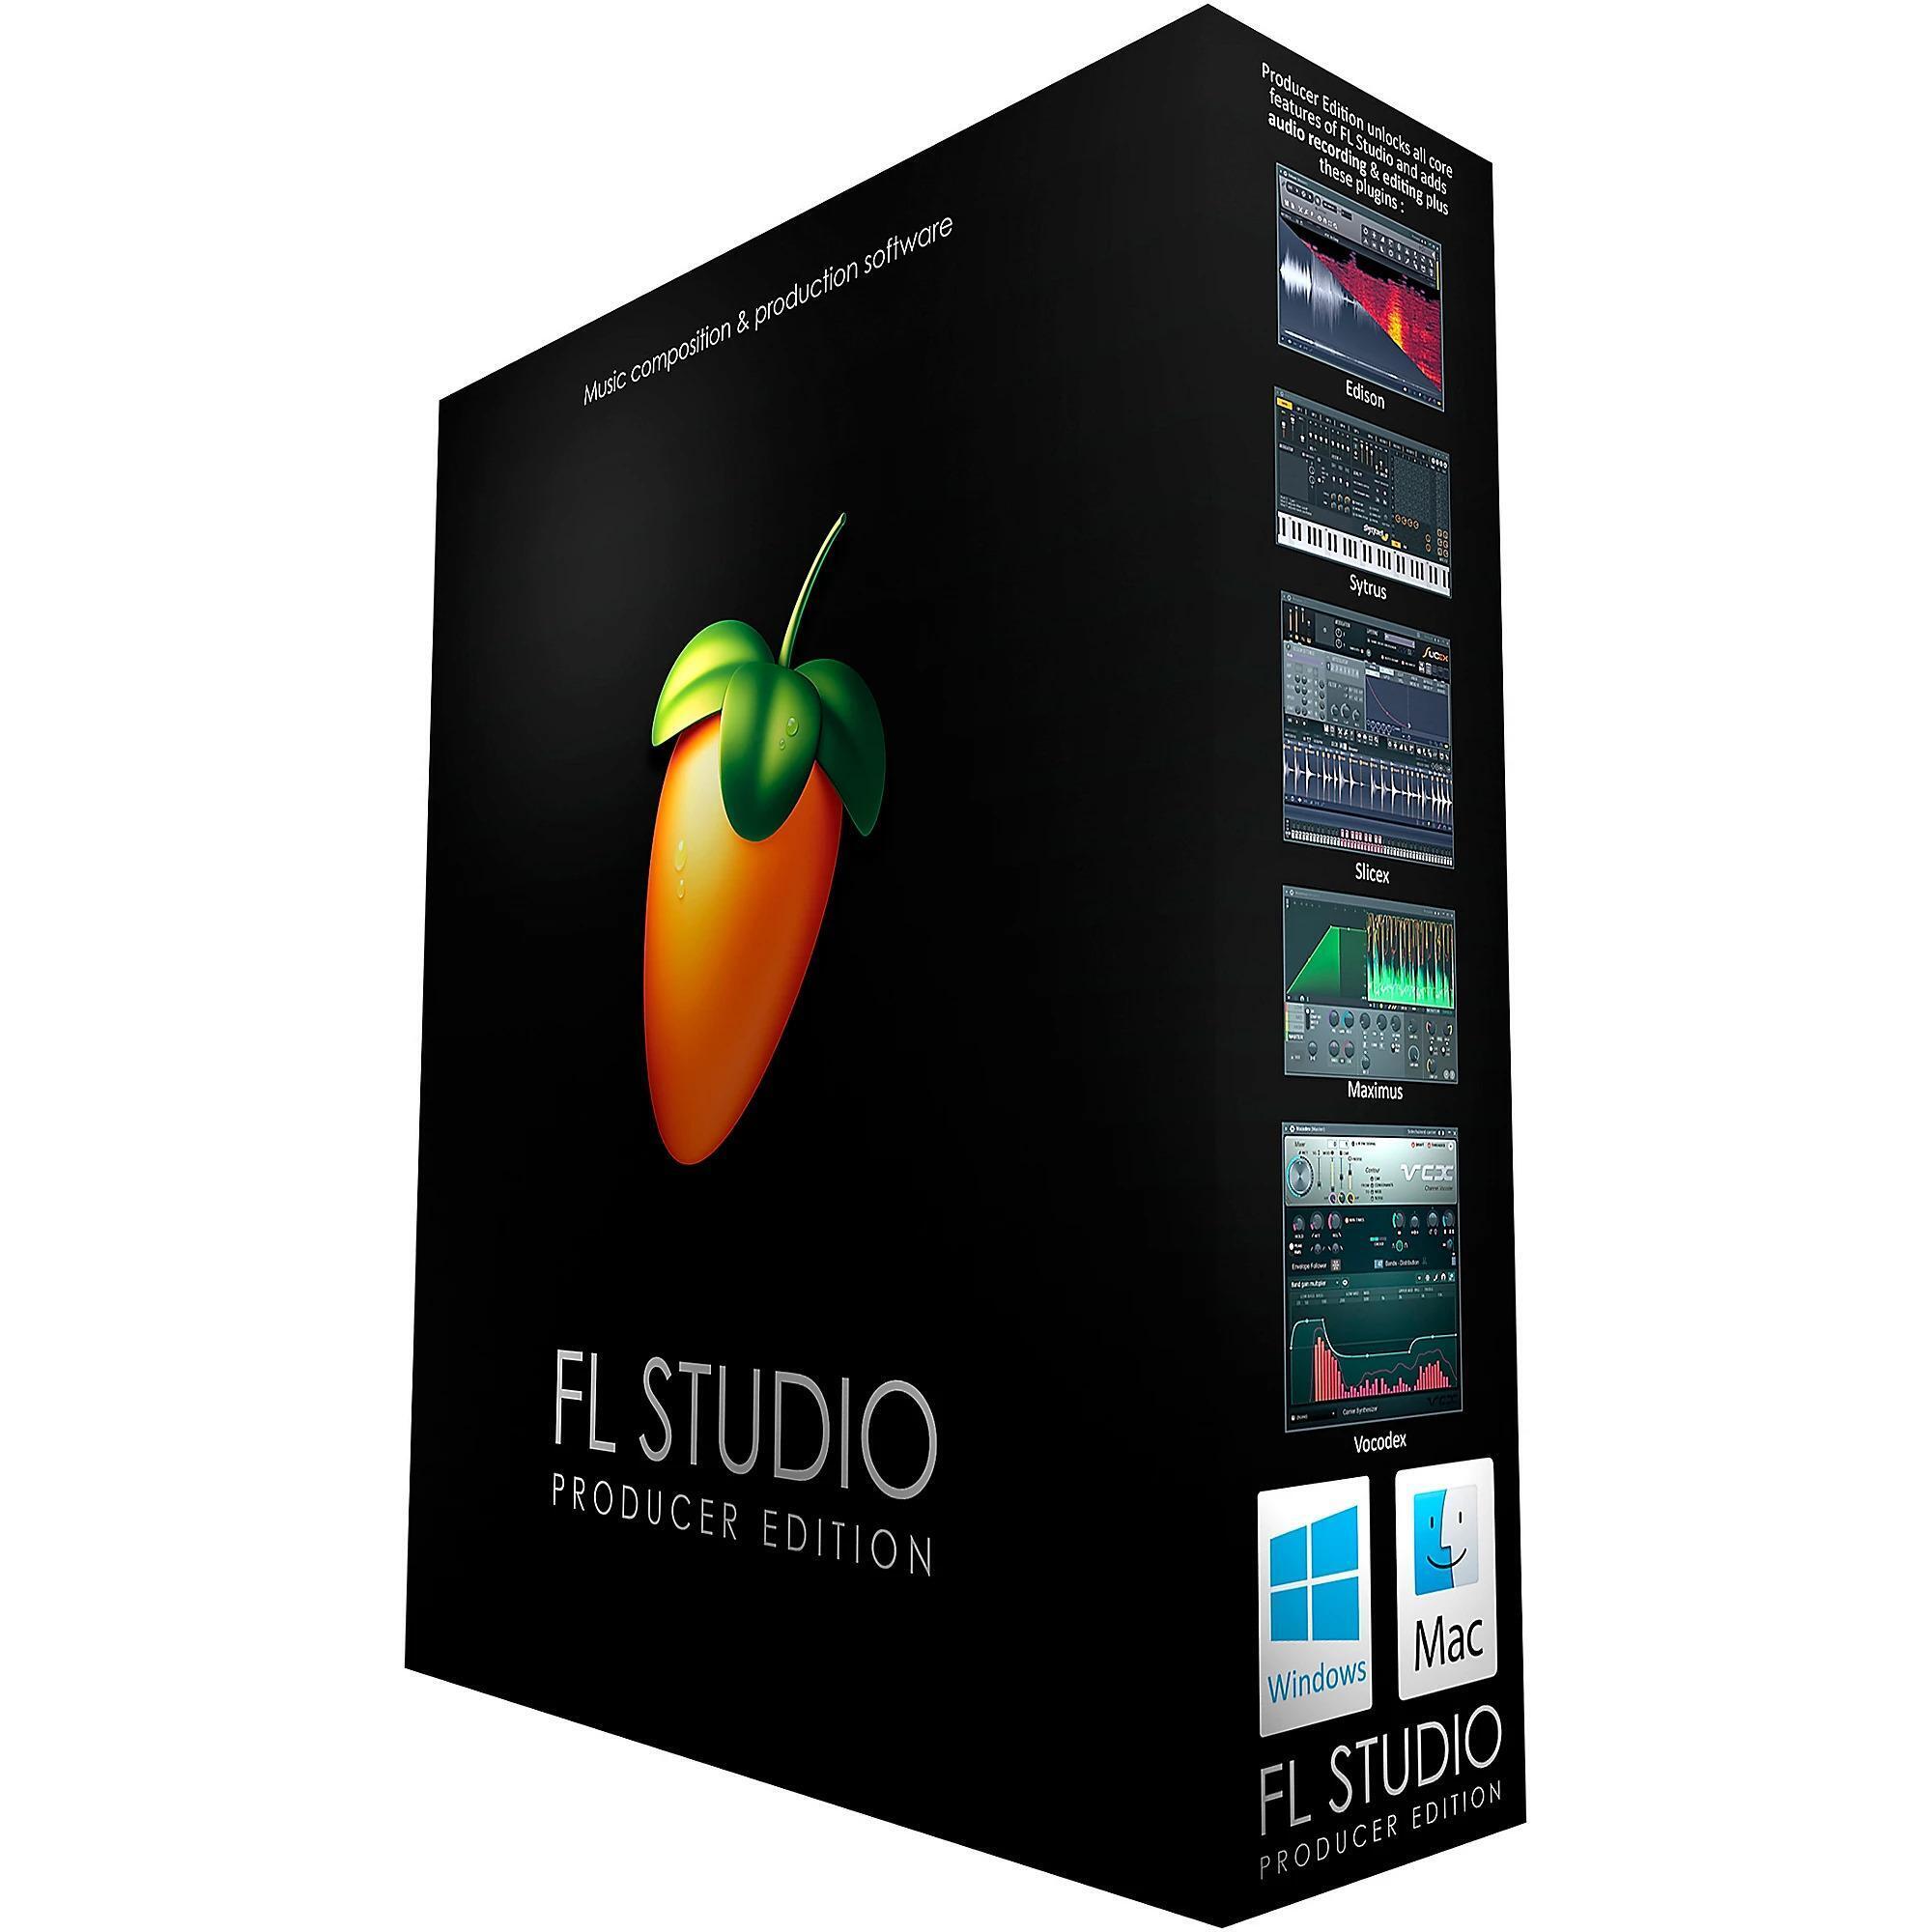 Bundled Item: Image Line FL Studio Producer Edition